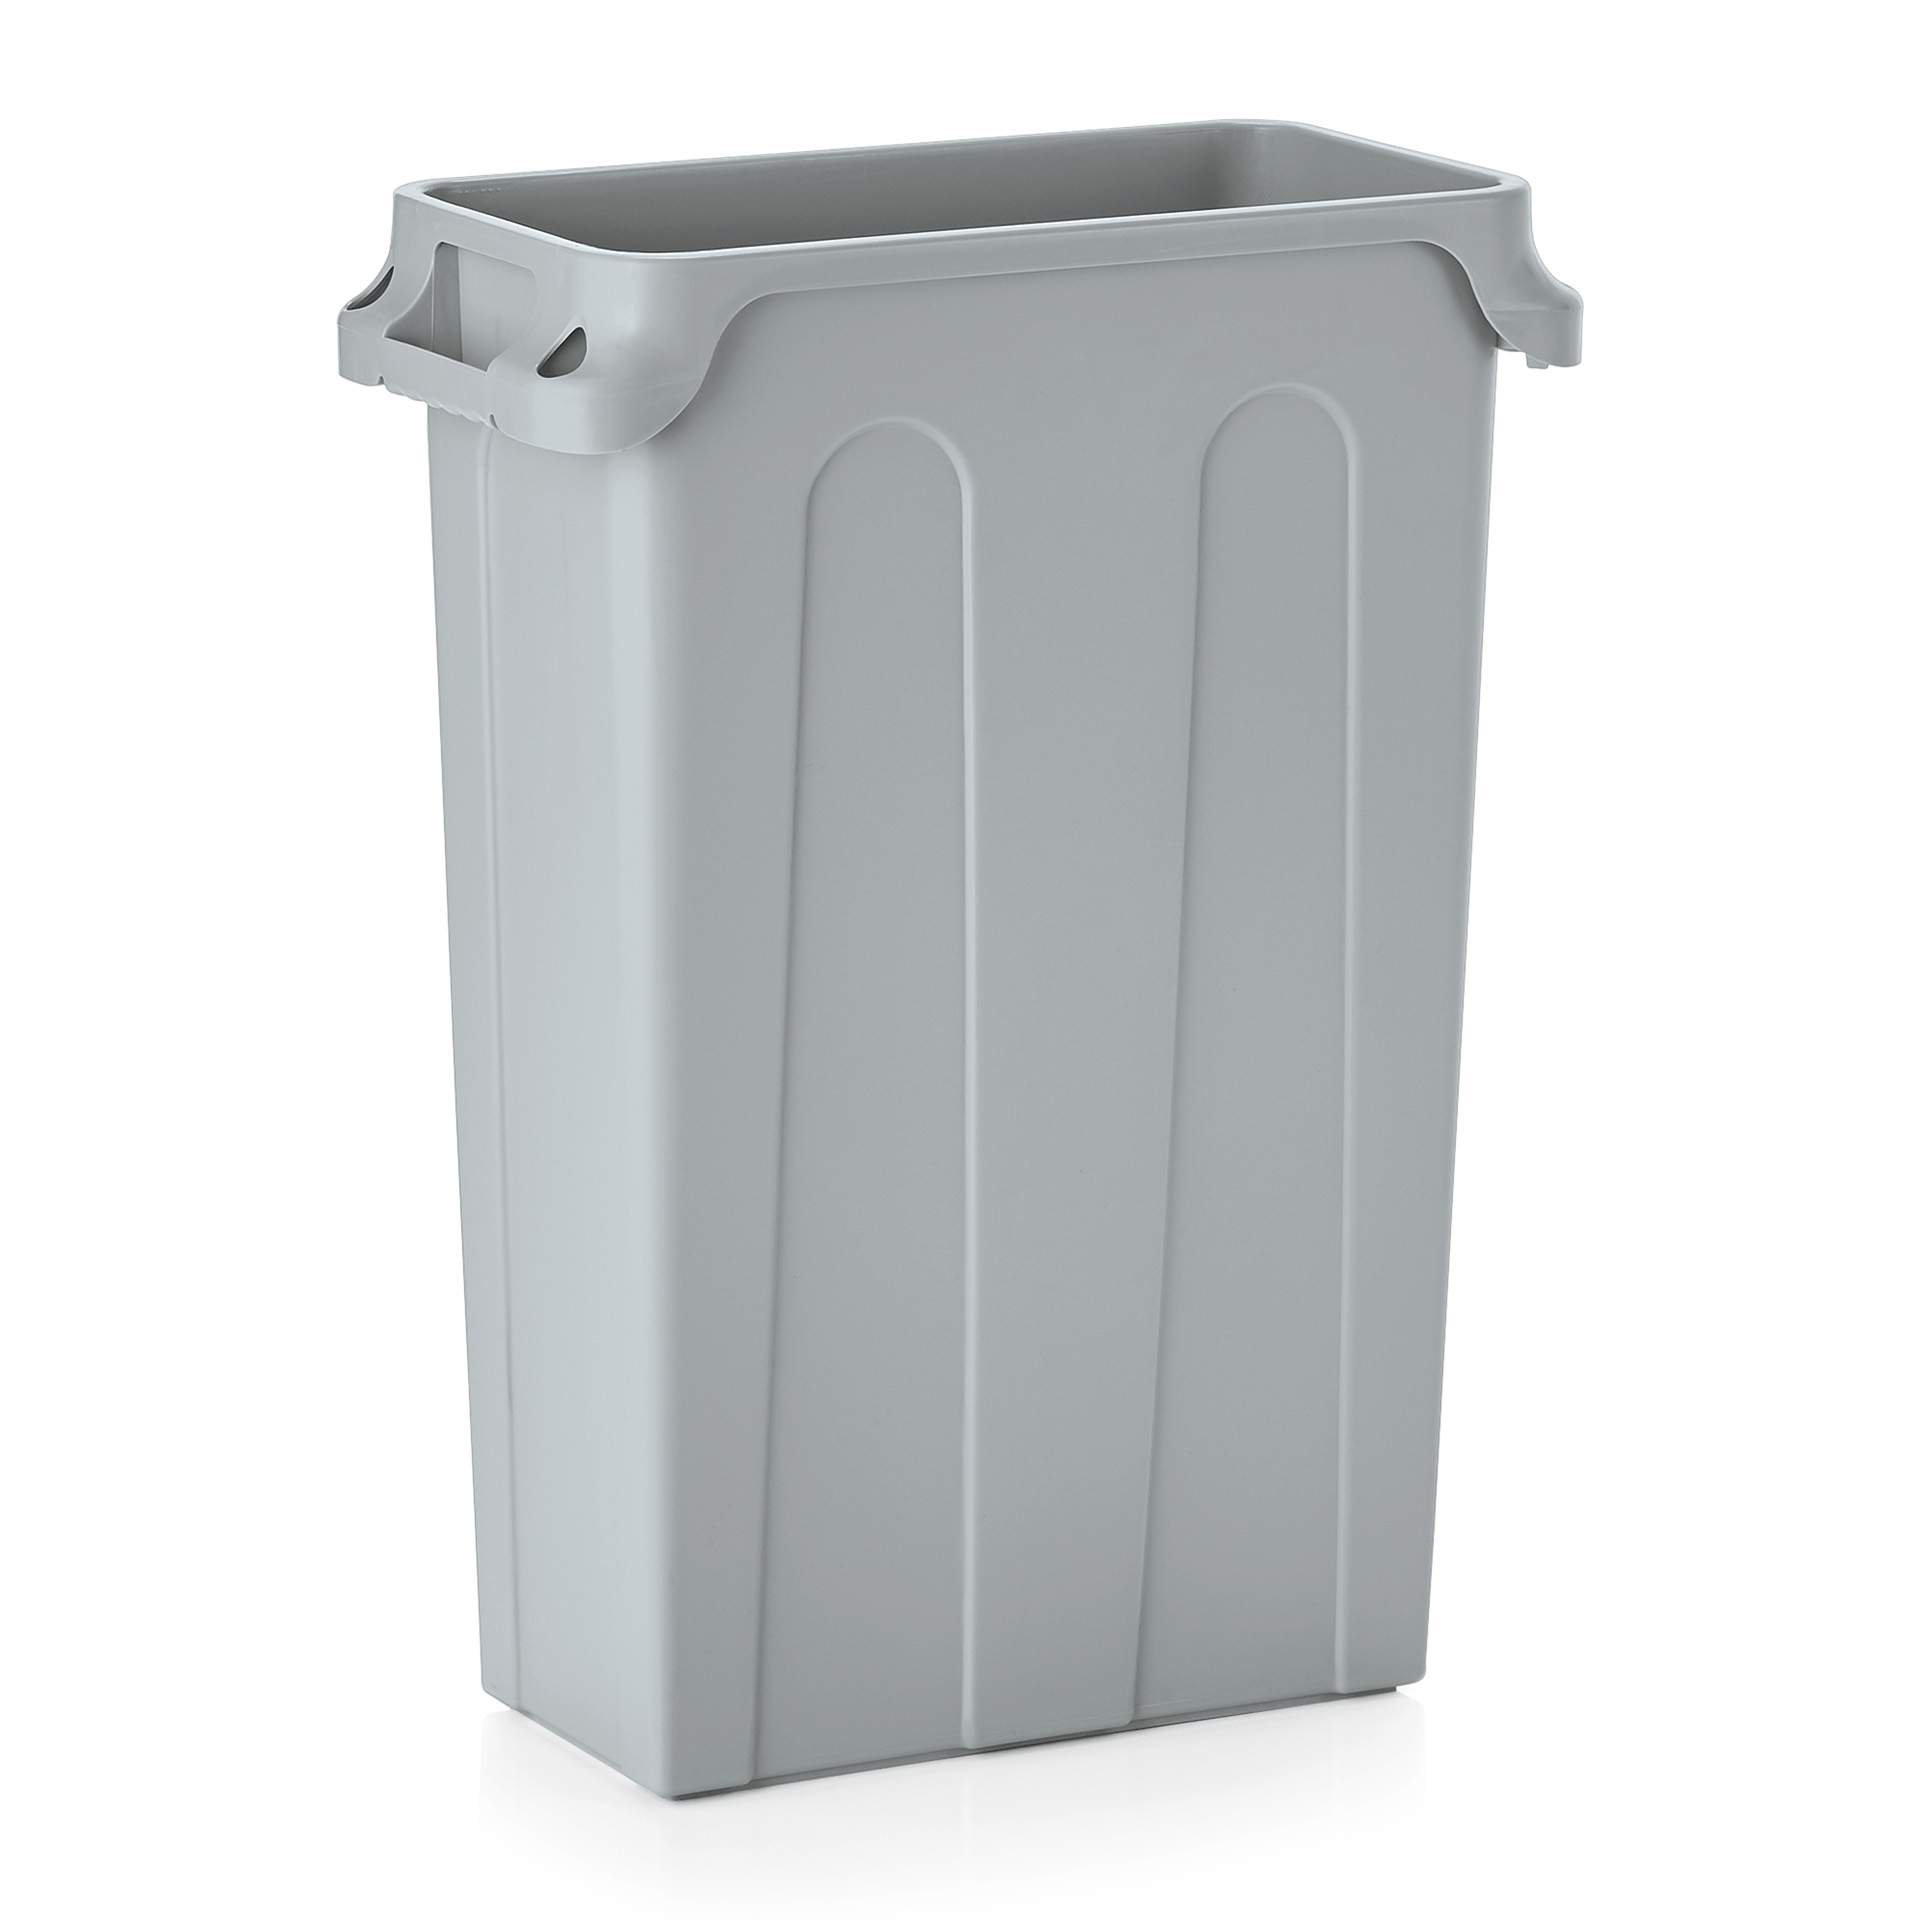 Abfallbehälter - Deckel bitte separat bestellen - Abm. 56,5 x 28 x 76 cm - Inhalt 75 l - Polyethylen - 9250750-A